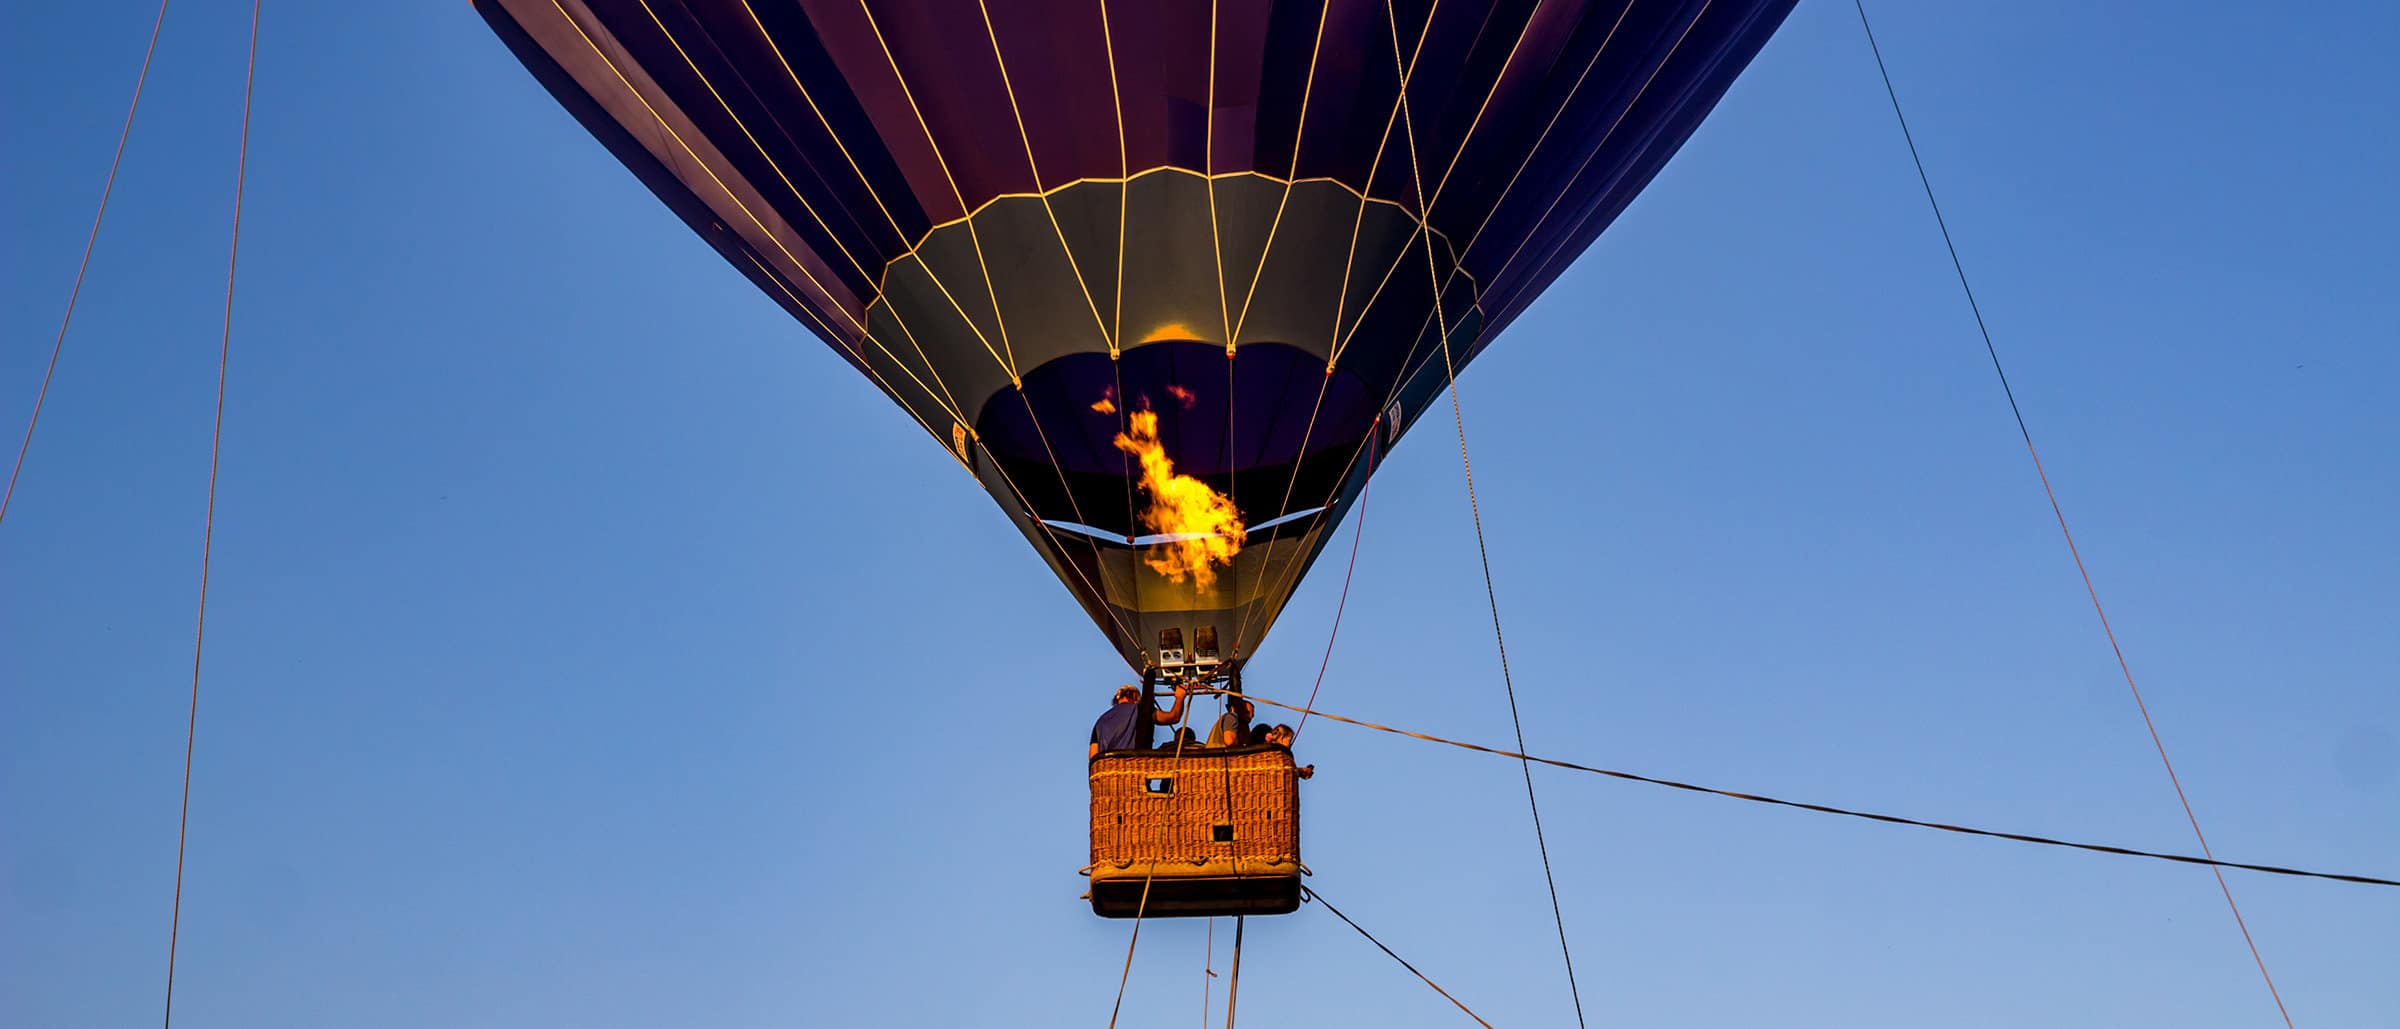 Tethered Hot Air Balloon